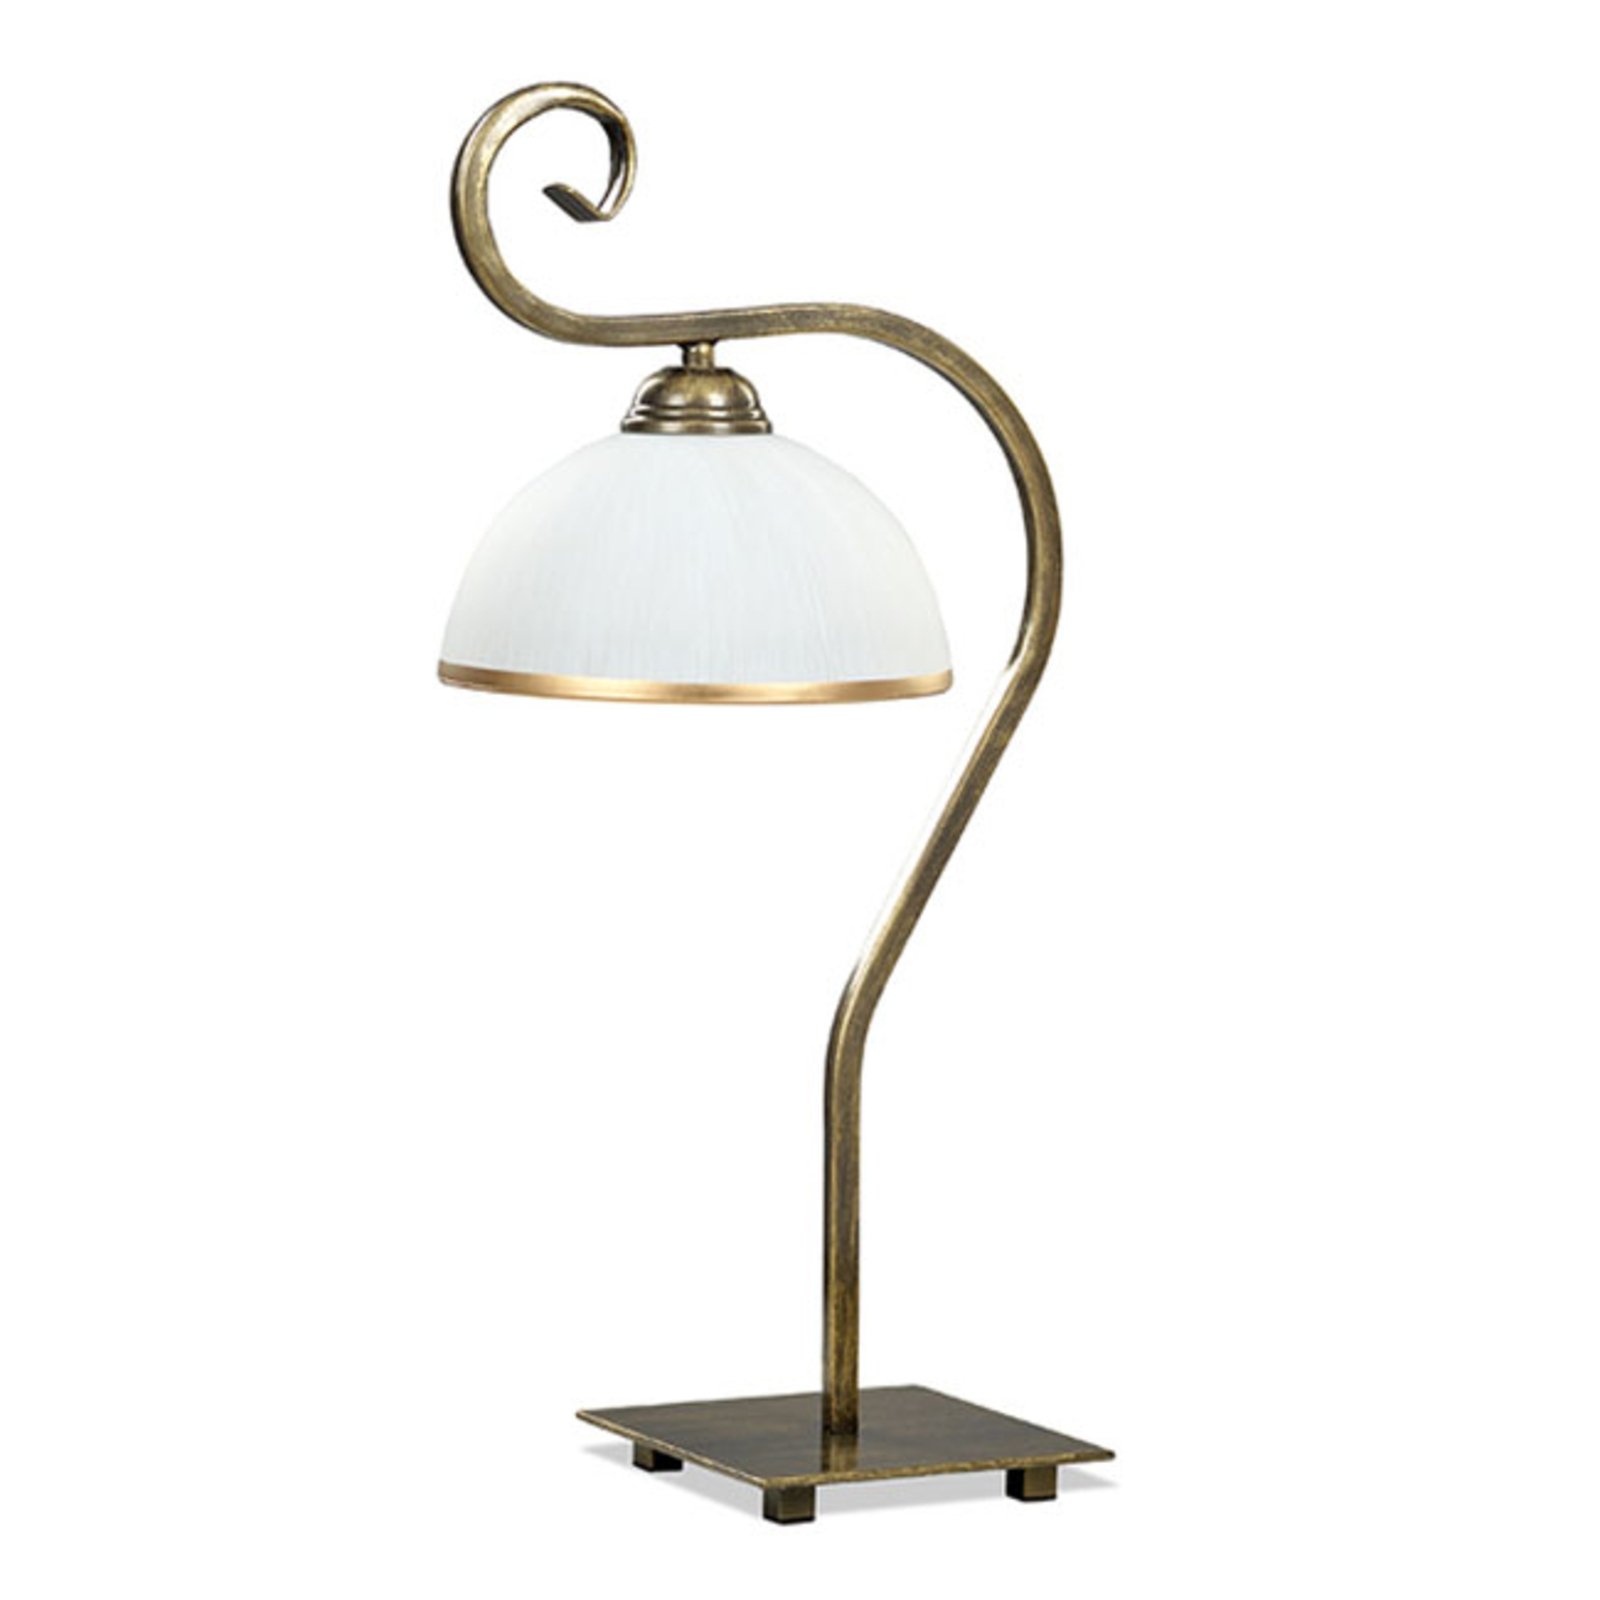 Tafellamp Wivara LN1 in klassiek-ontwerp, goud